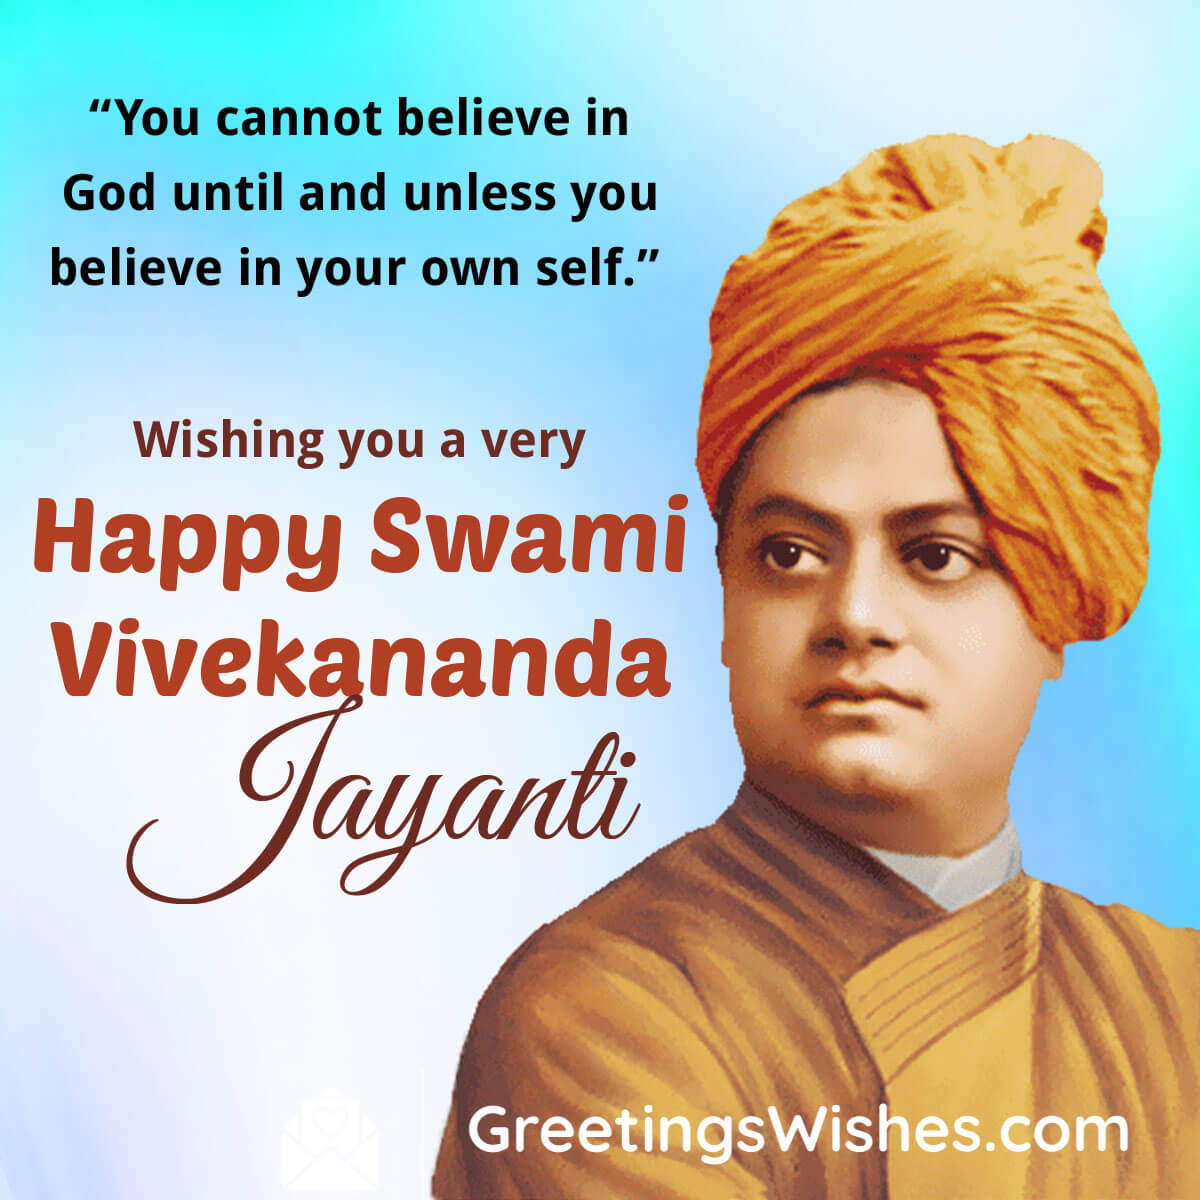 Happy Swami Vivekananda Jayanti